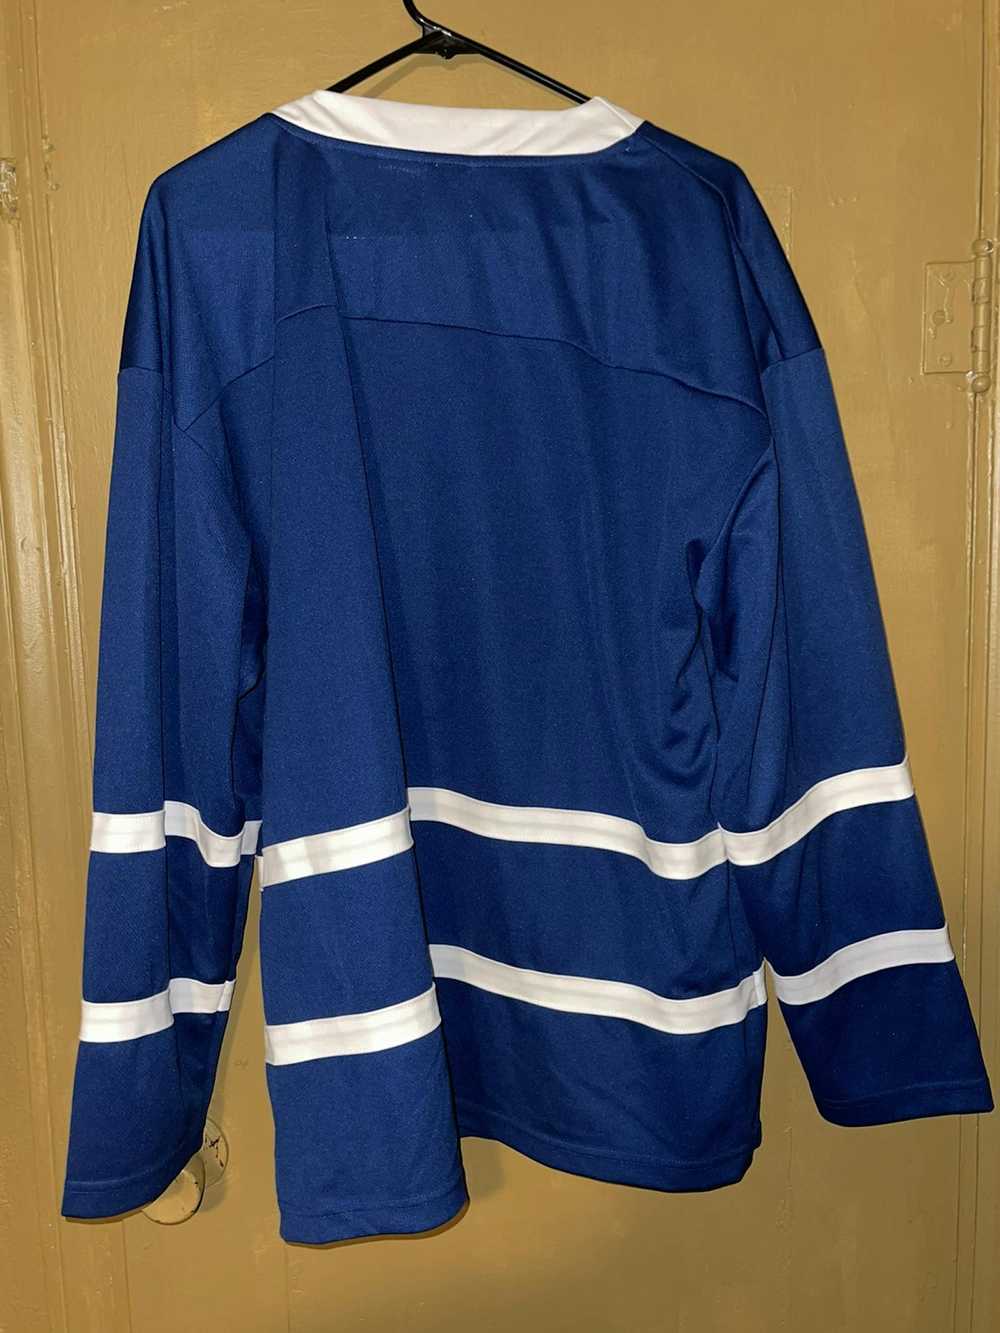 Hockey Jersey × NHL × Vintage NHL CBC Sports Hock… - image 10